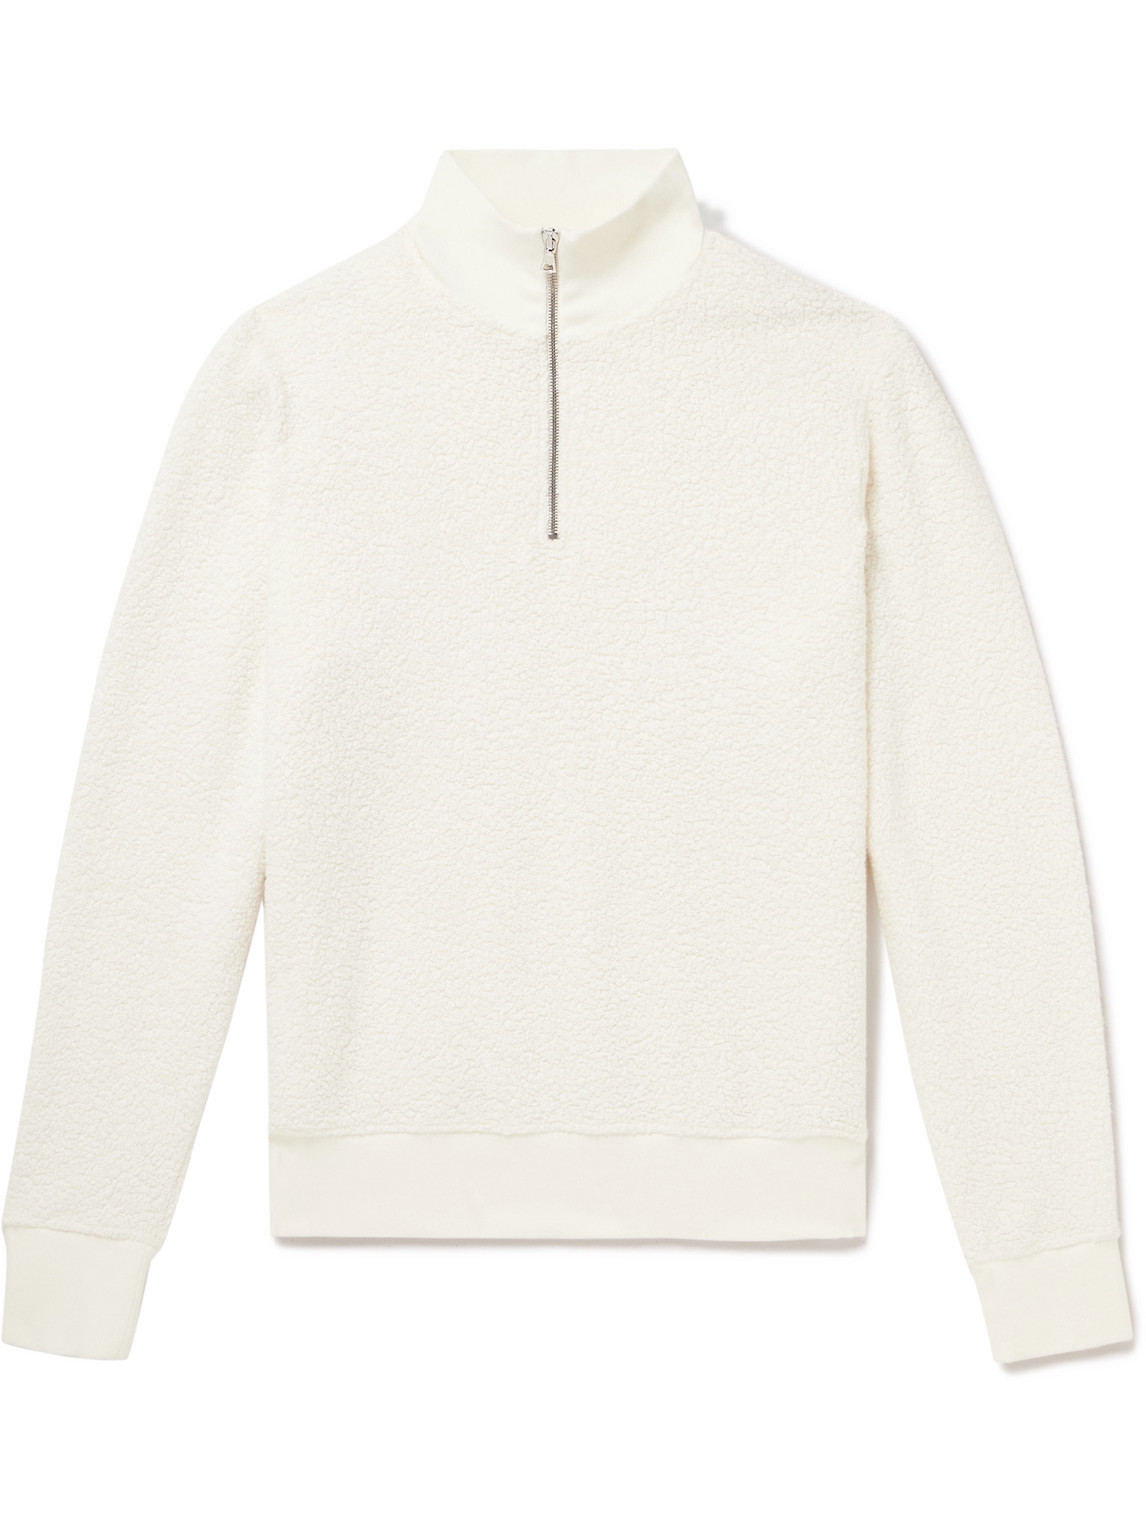 Isar Half-Zip Fleece Sweatshirt